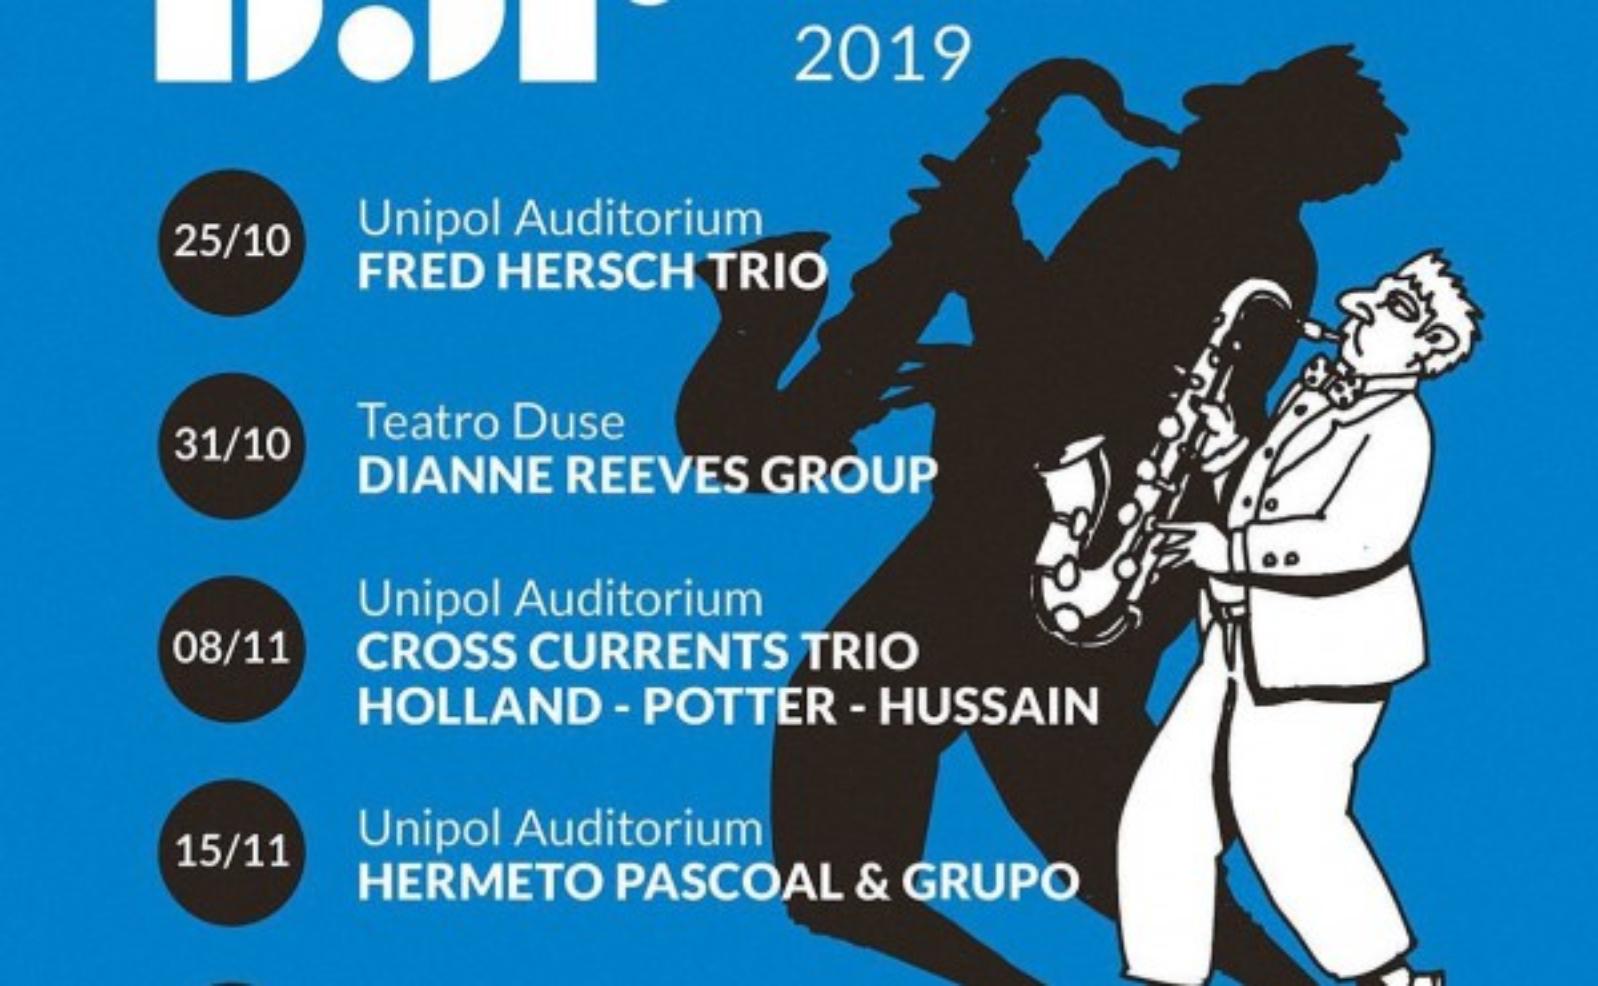 Bologna Jazz Festival 2019